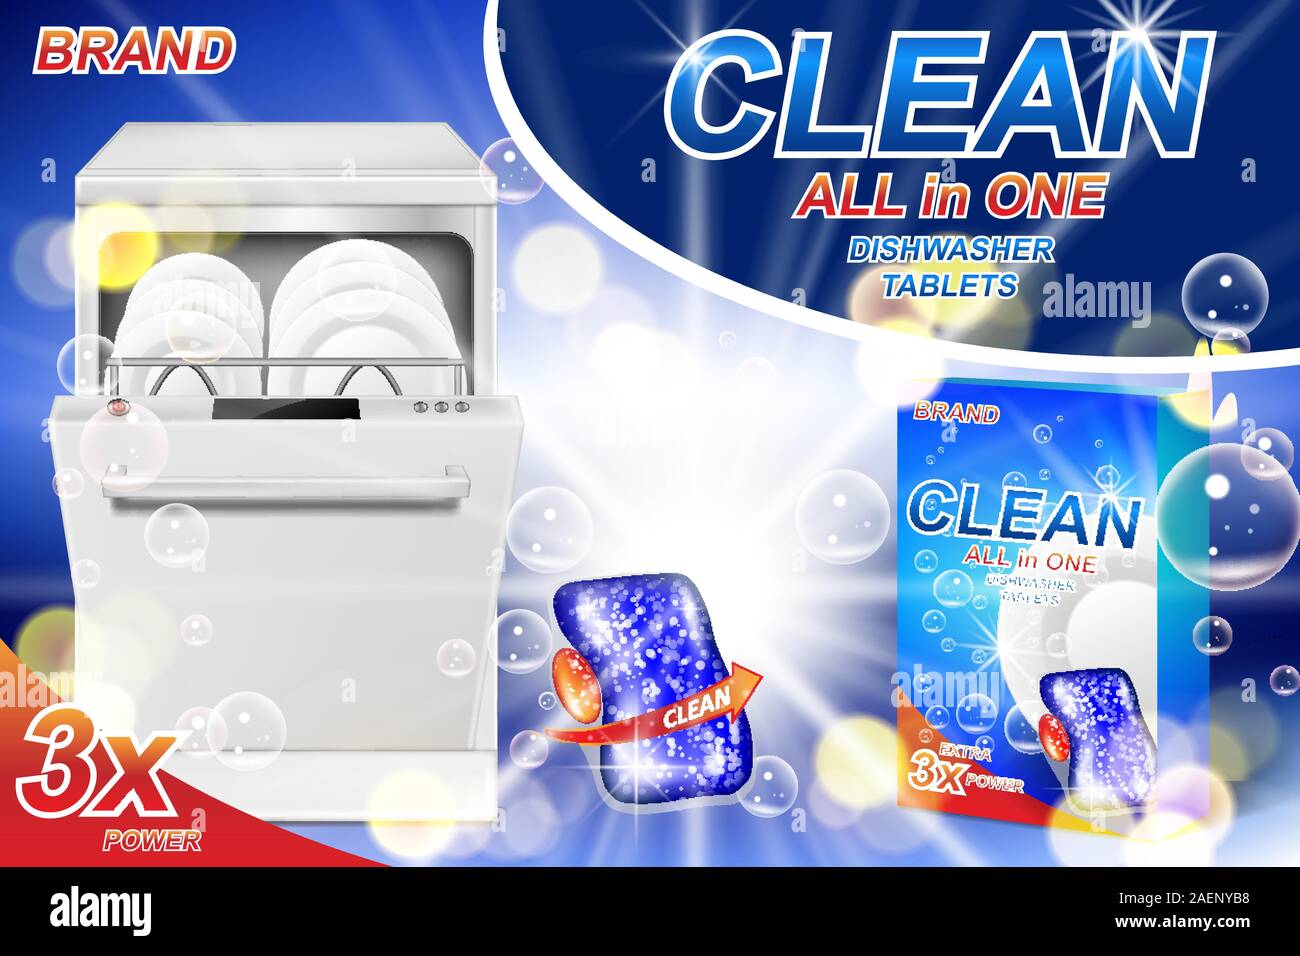 Dish wash savon annonces. Emballage de la vaisselle en plastique réaliste avec gel détergent affiche publicitaire. Les comprimés de savon liquide pour lave-vaisselle automatique. 3d Illustration de Vecteur